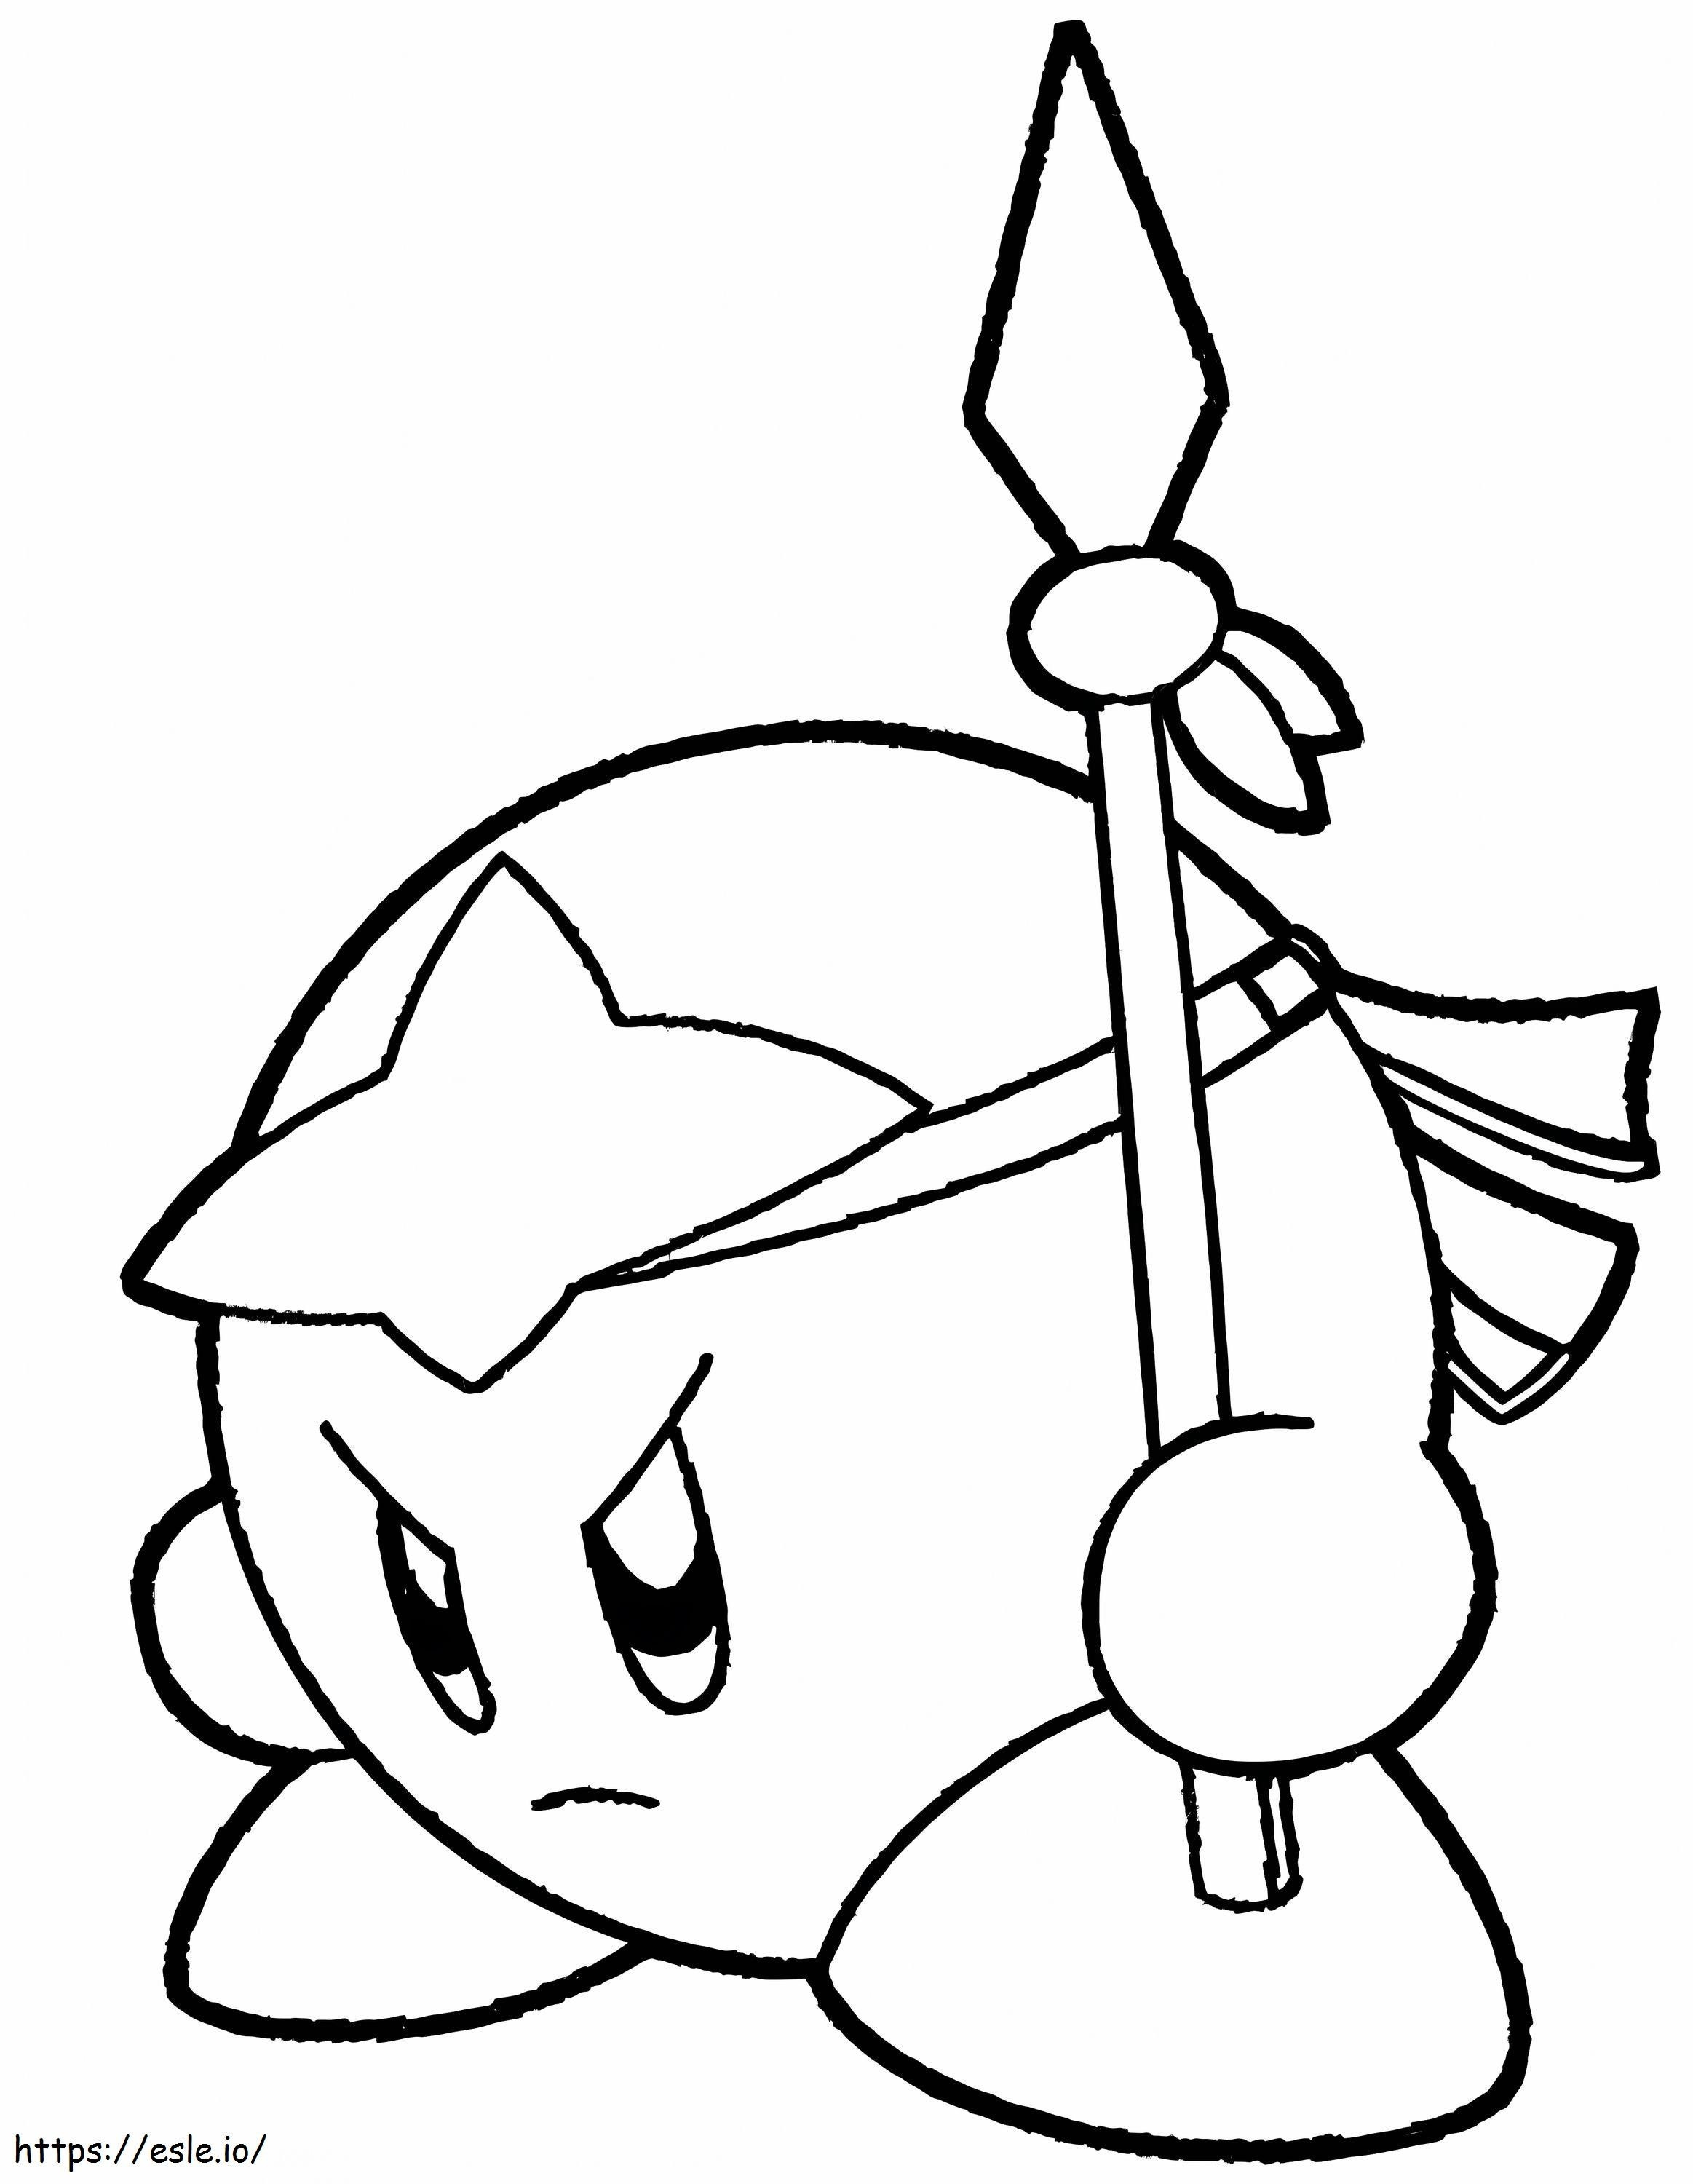 Kirby Mızrak Tutuyor boyama